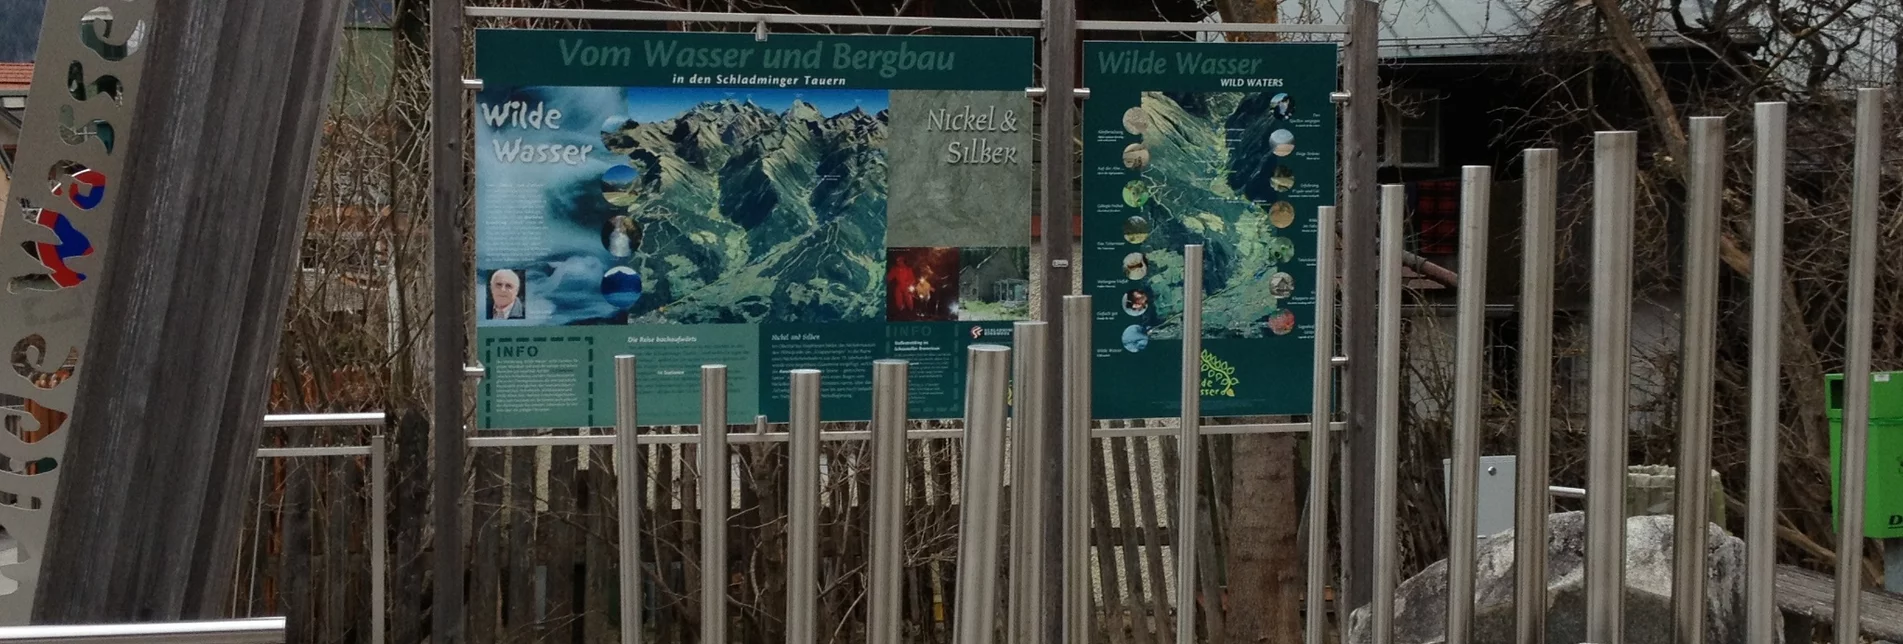 Regional hiking trail Talbachklamm Tour - Touren-Impression #1 | © Erlebnisregion Schladming-Dachstein